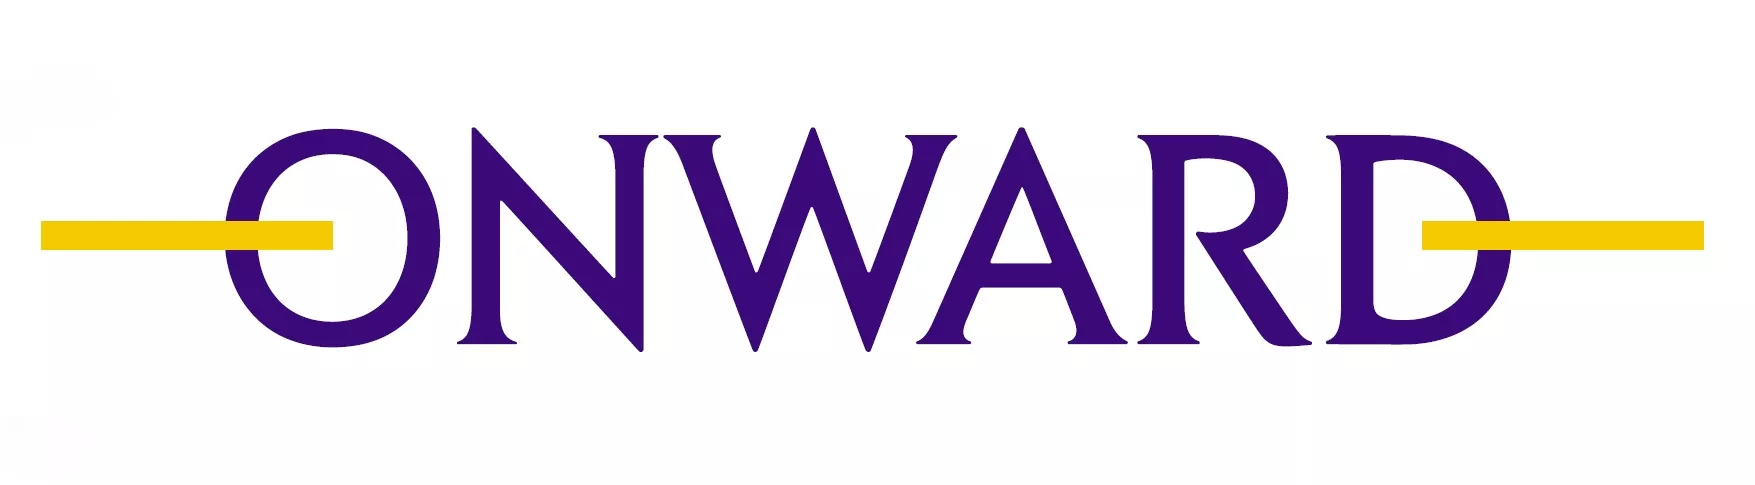 Onward logo & Ohana & co